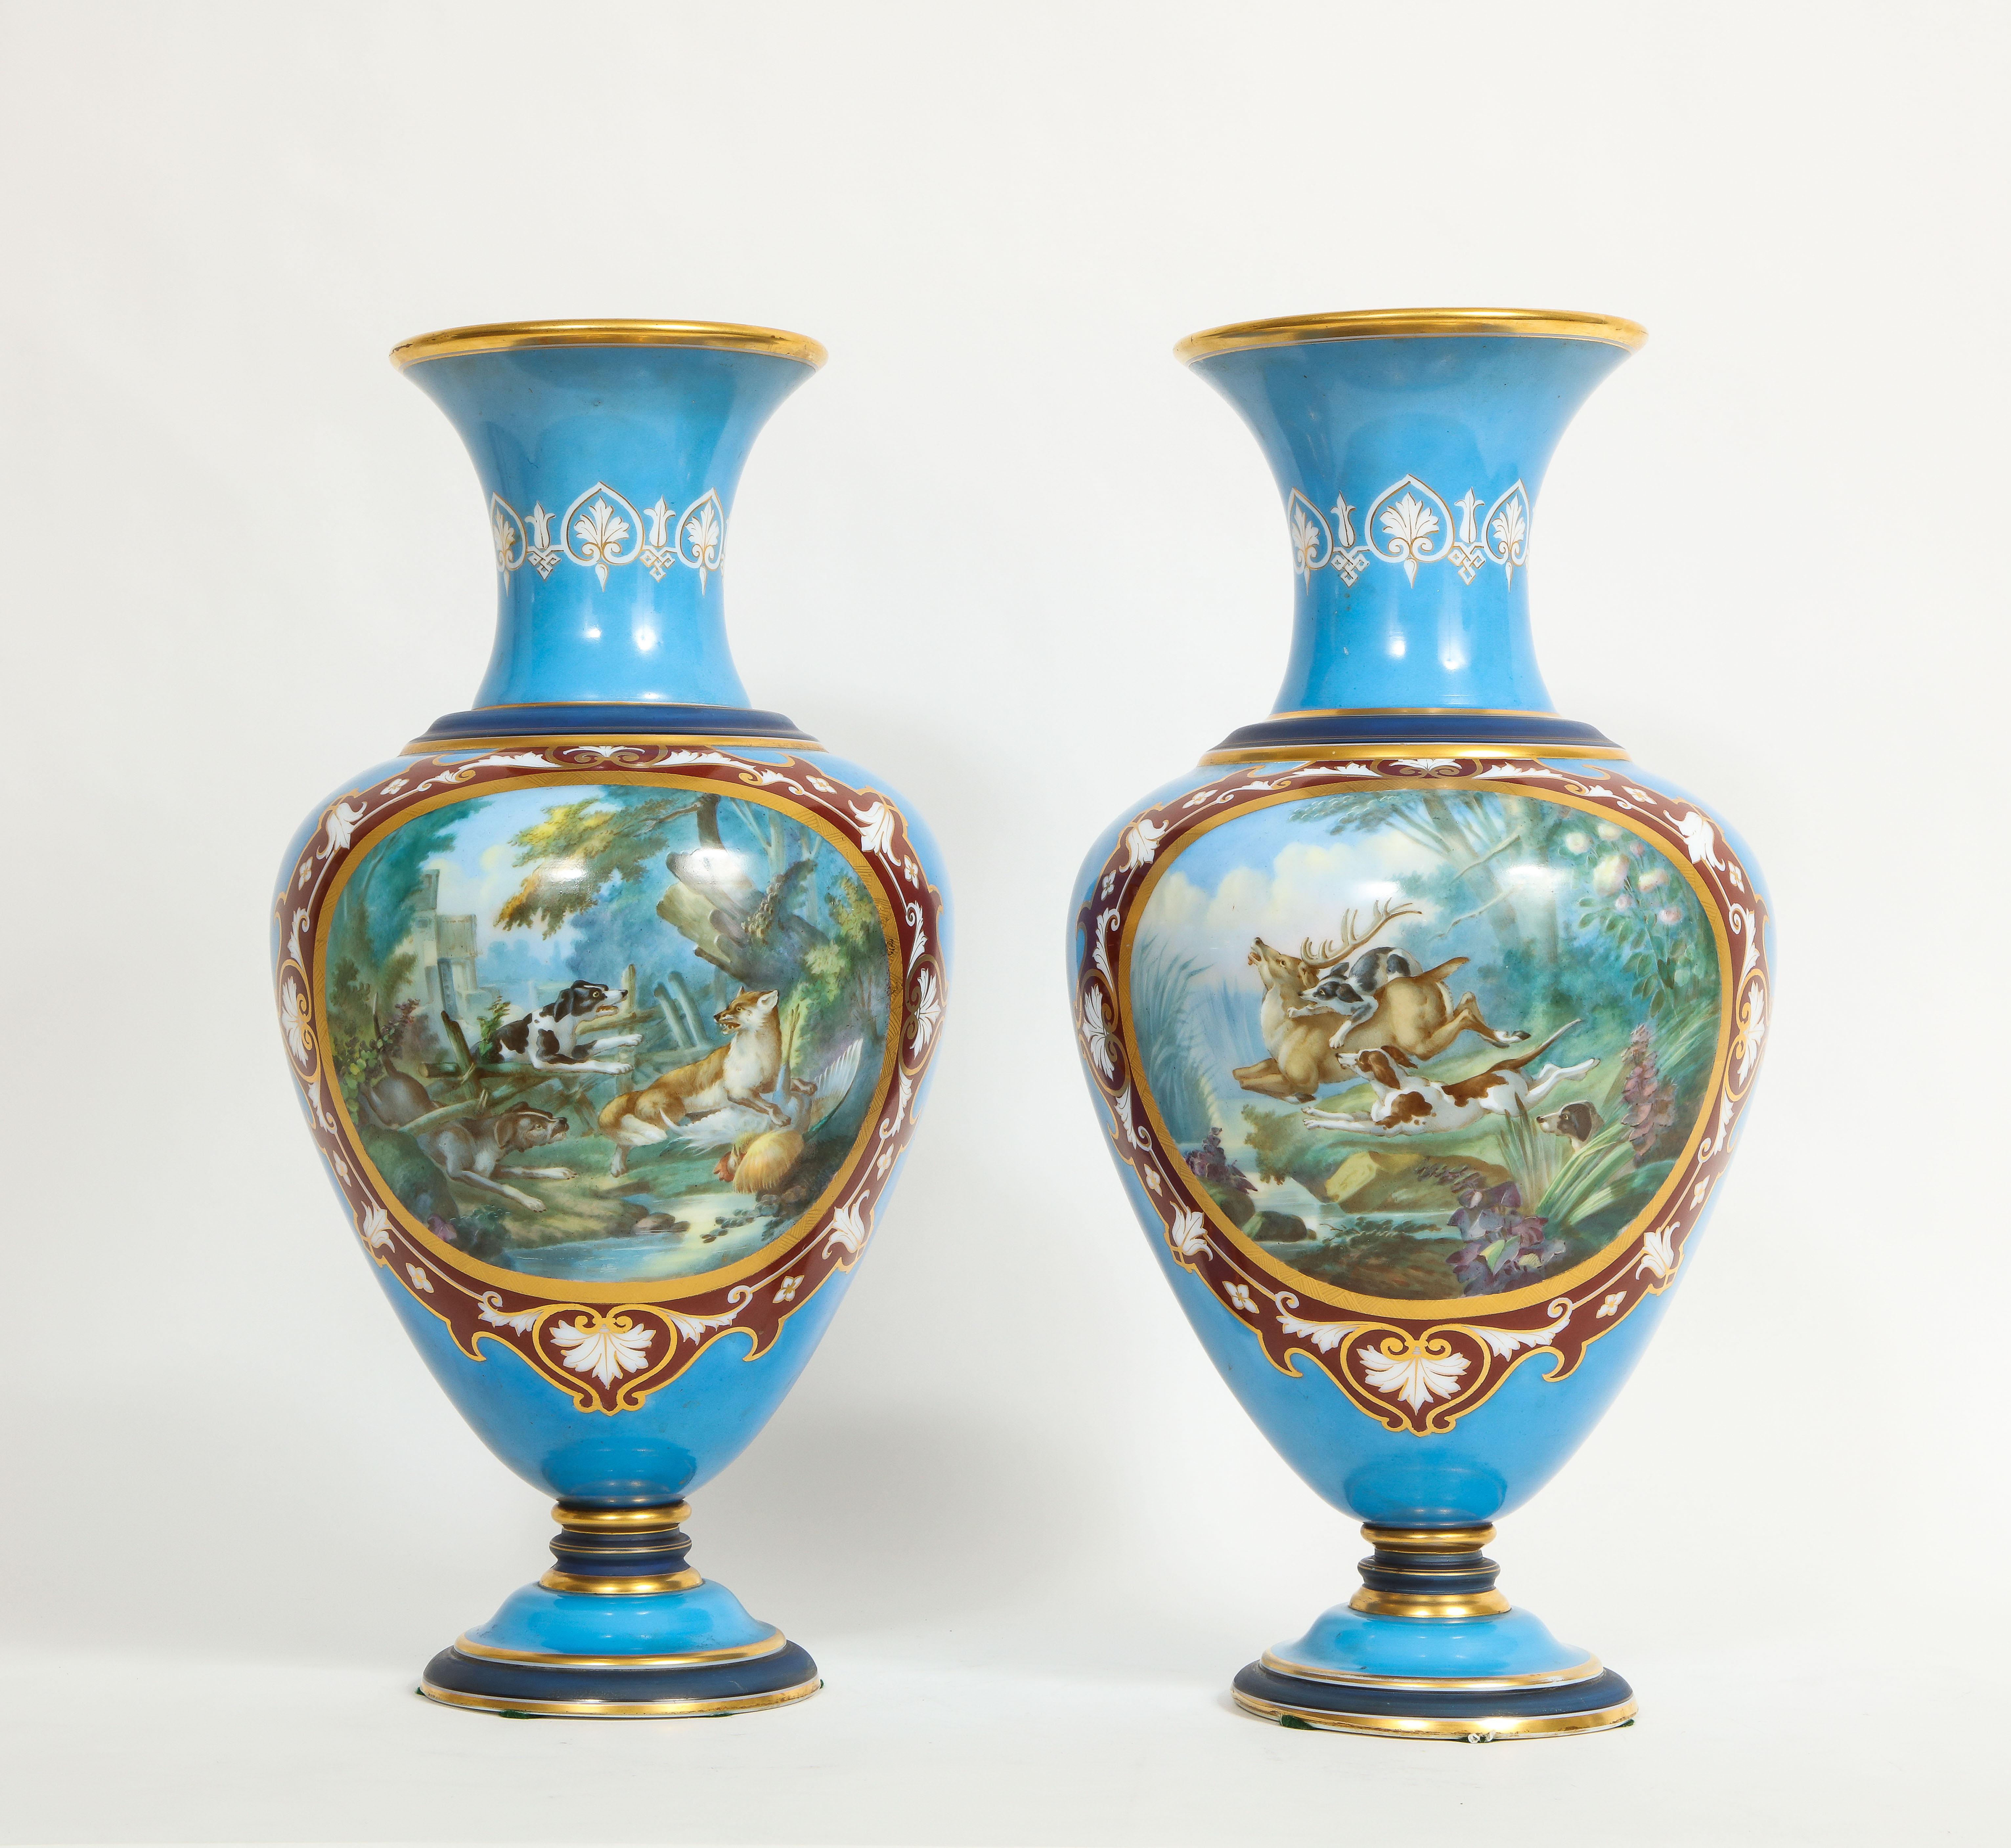 Fantastique et grande paire de vases opalescents émaillés de Baccarat du 19ème siècle. Chaque vase est de forme balustre, avec des peintures émaillées de grandes scènes de chasse de chiens poursuivant soit un cerf soit un renard dans une forêt,